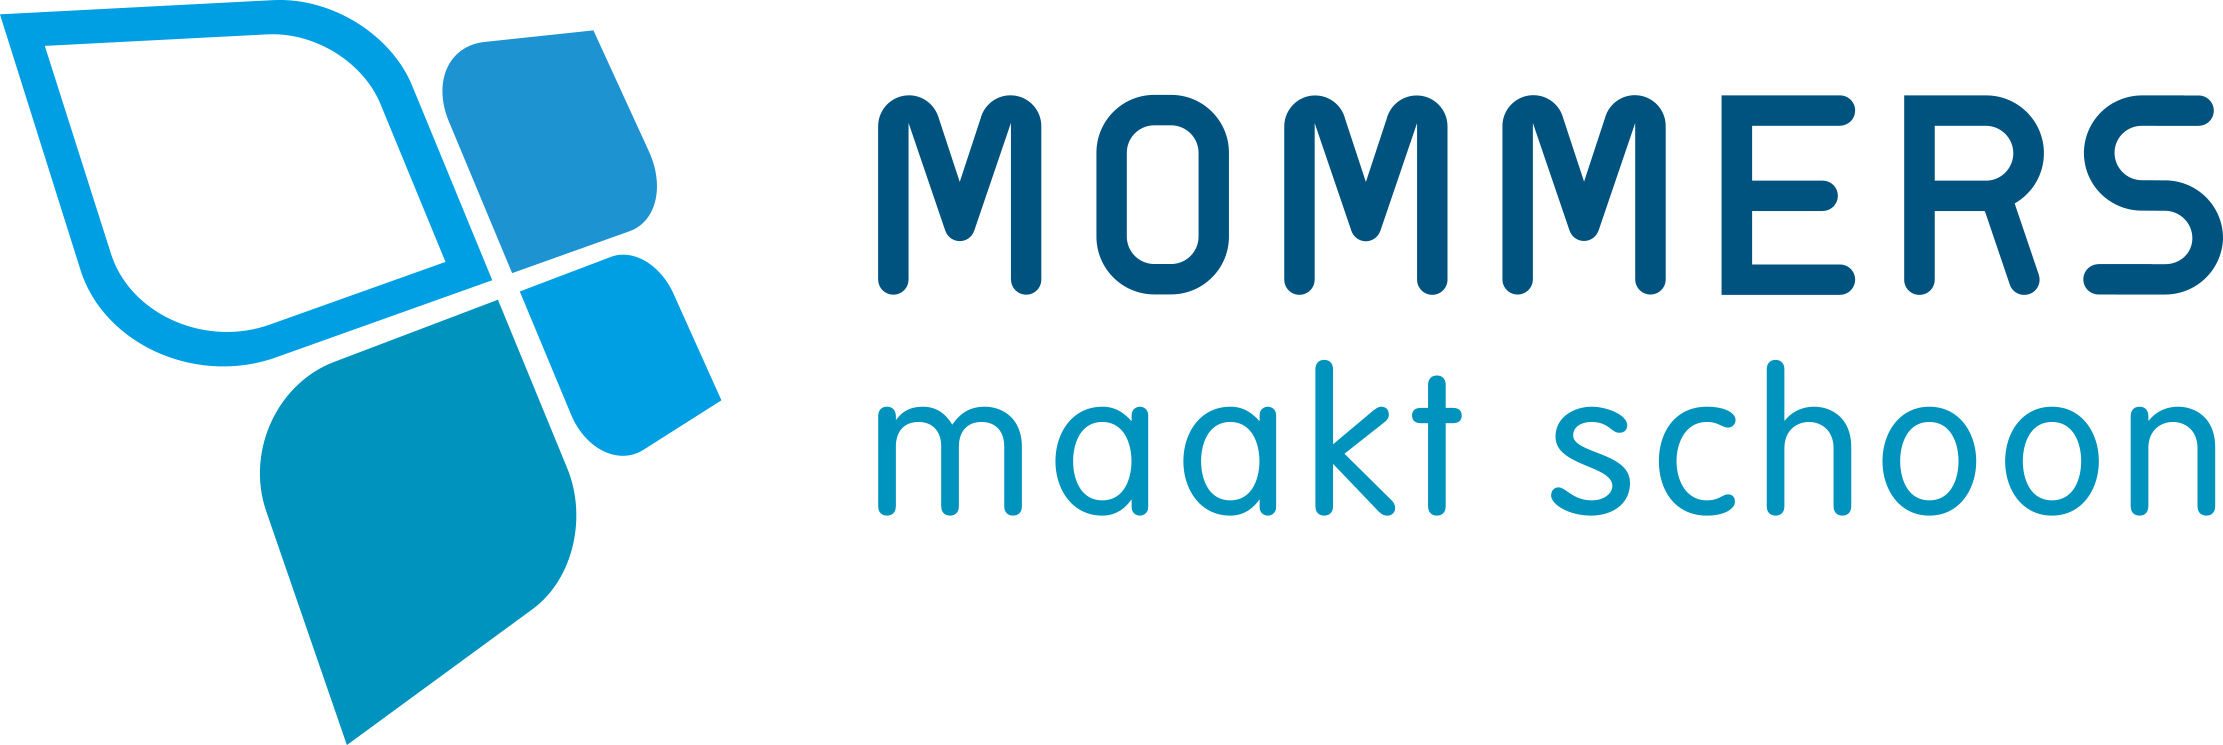 logo MOMMERS-Versie#2-PMS